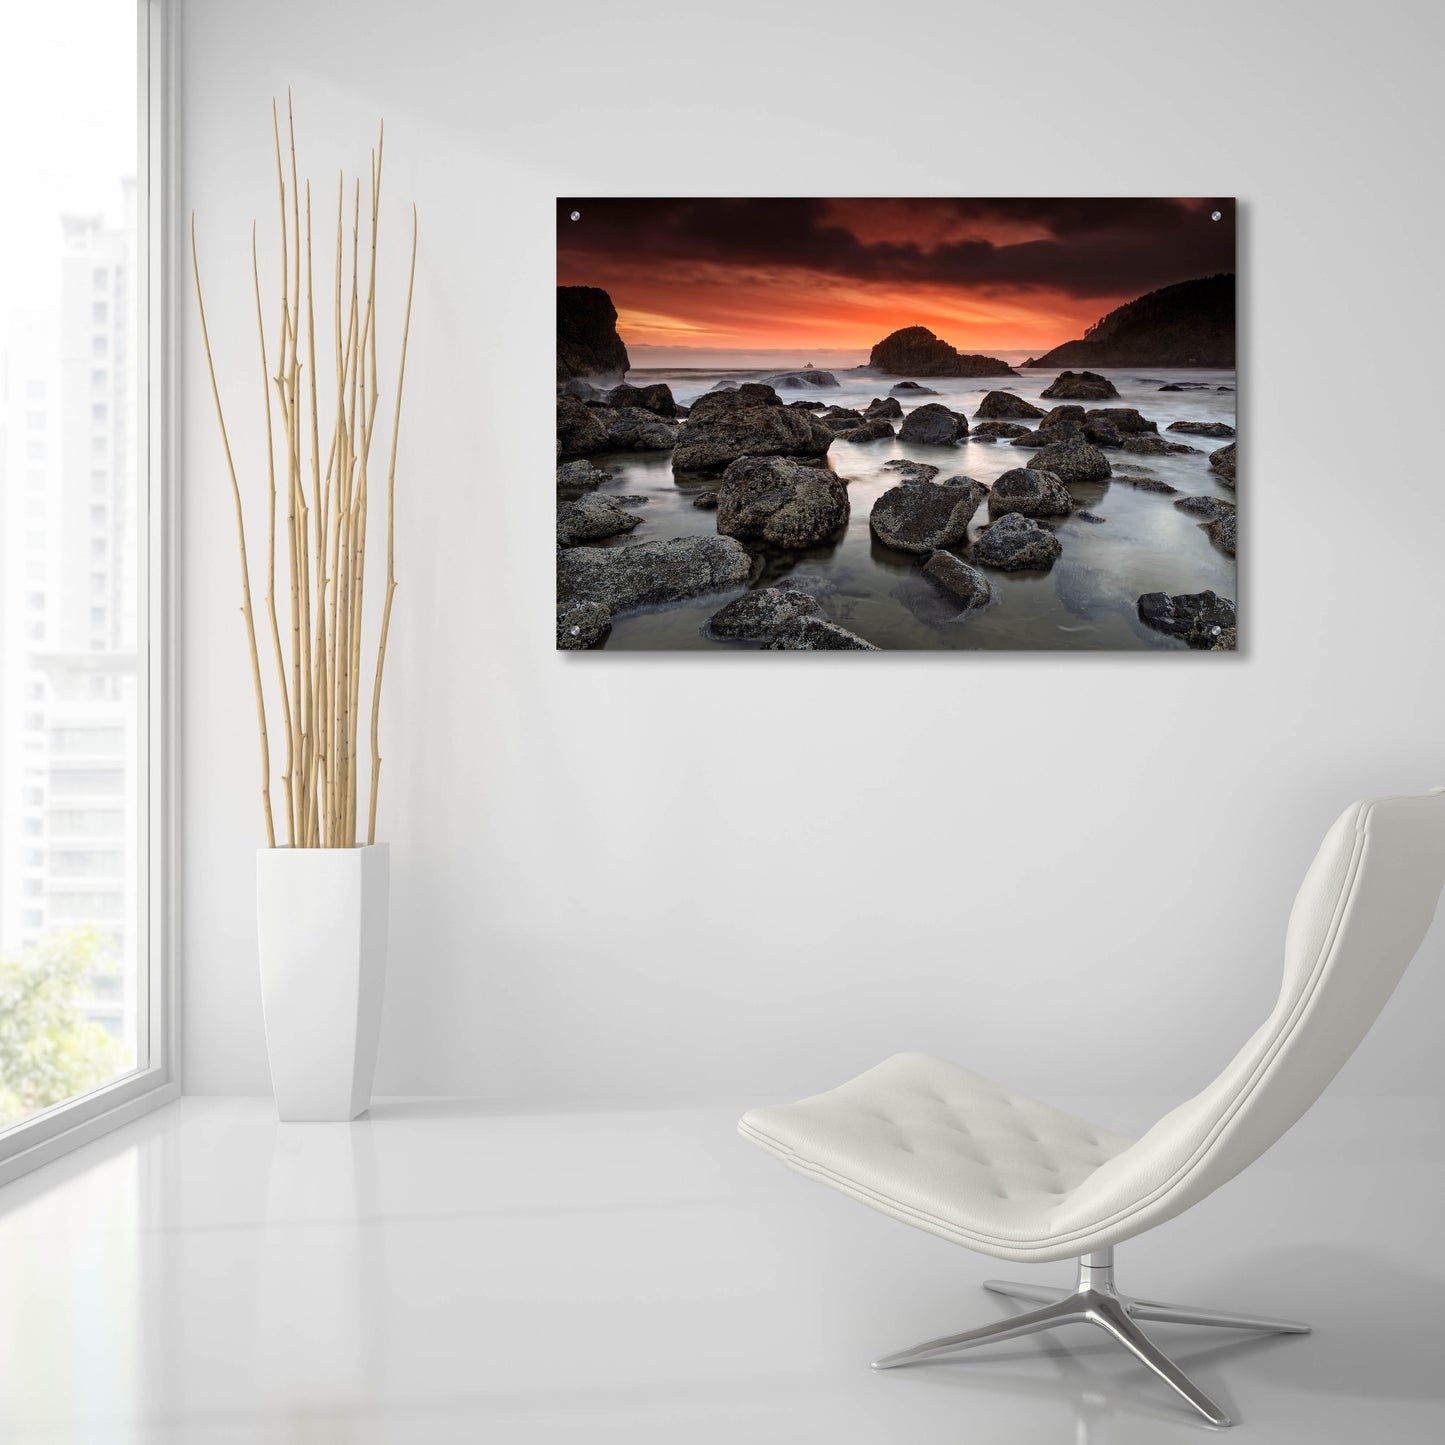 Epic Art 'Indian Beach Sunset' by Rick Berk, Acrylic Glass Wall Art,36x24